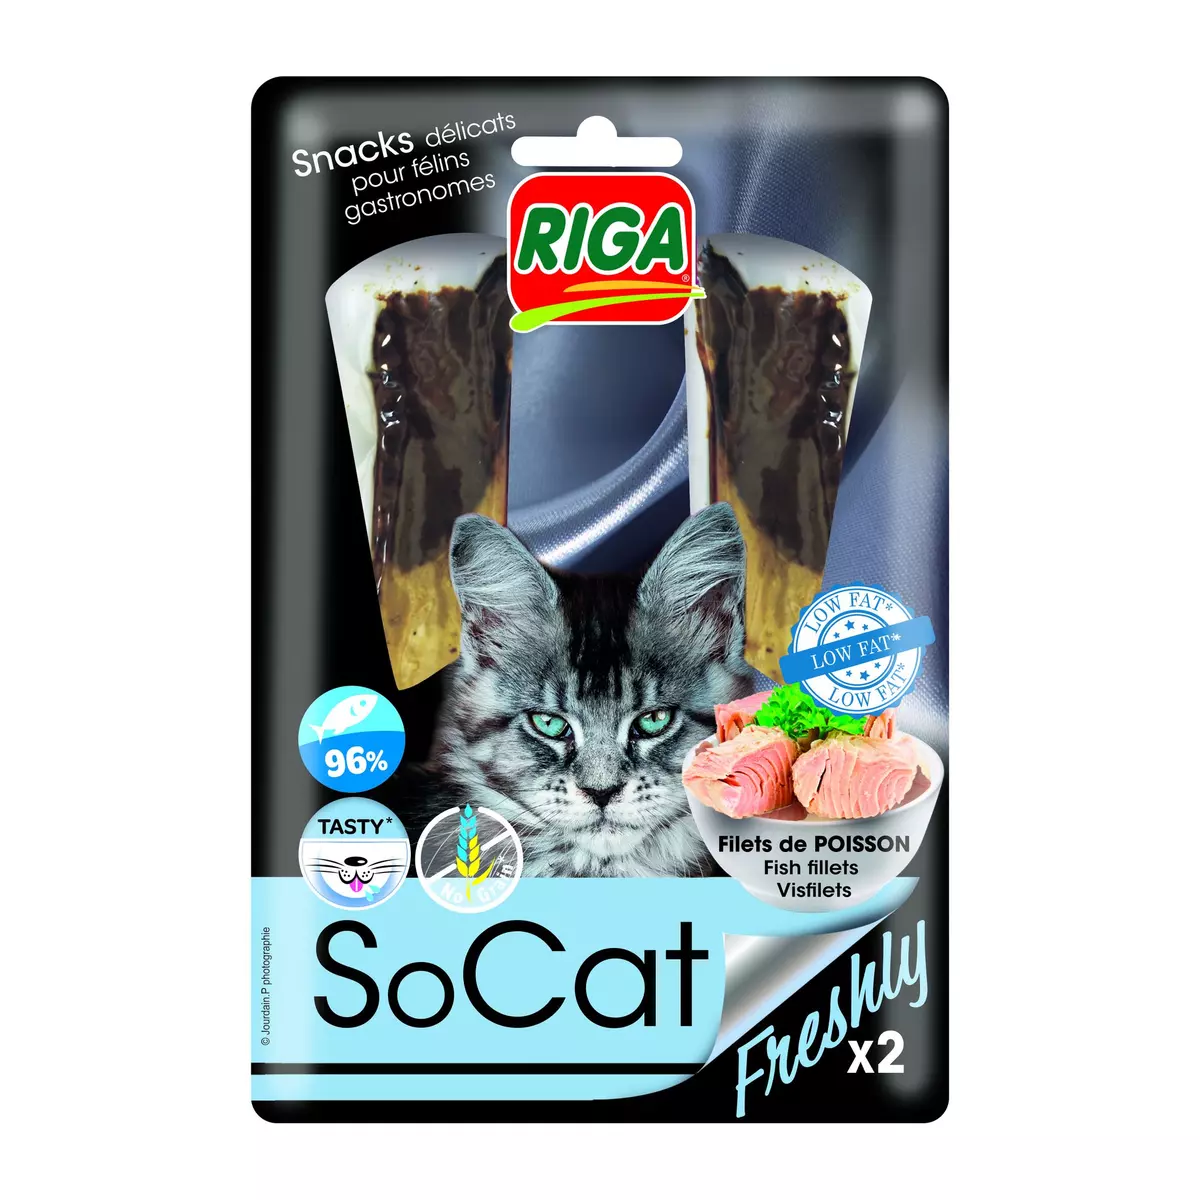 RIGA Snacks filets de poisson SoCat Freshly sans gluten pour chat 2 snacks 25g